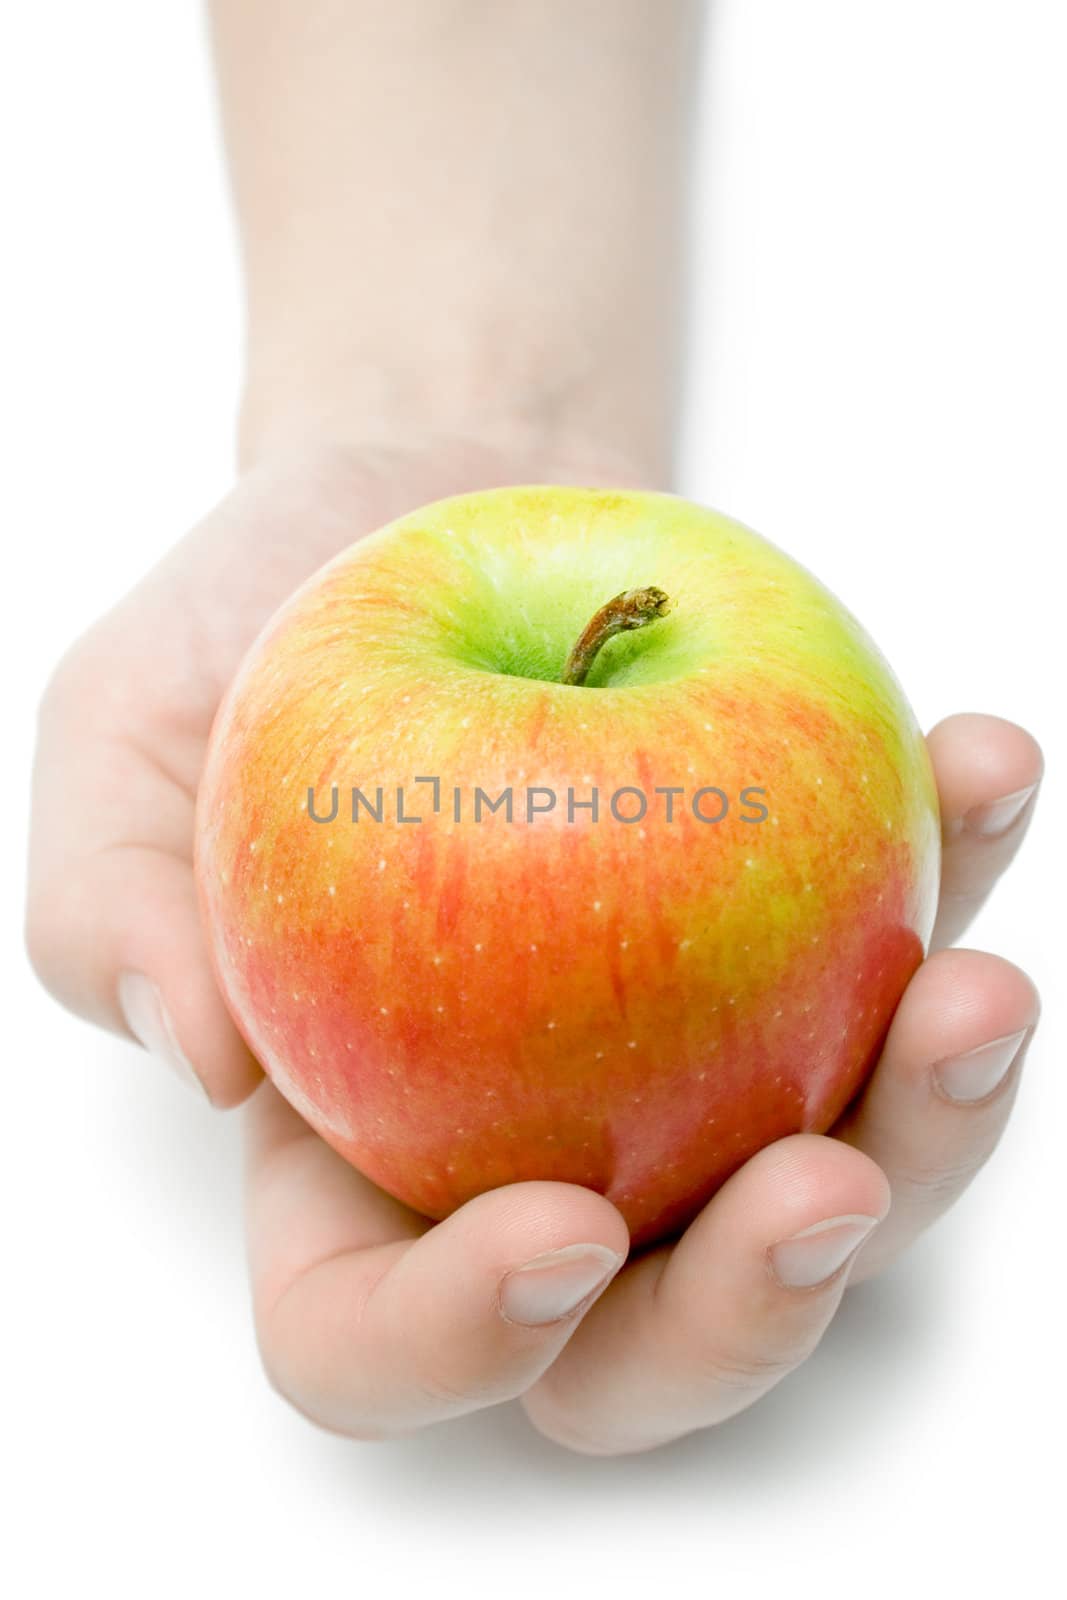 Offering an Apple by winterling